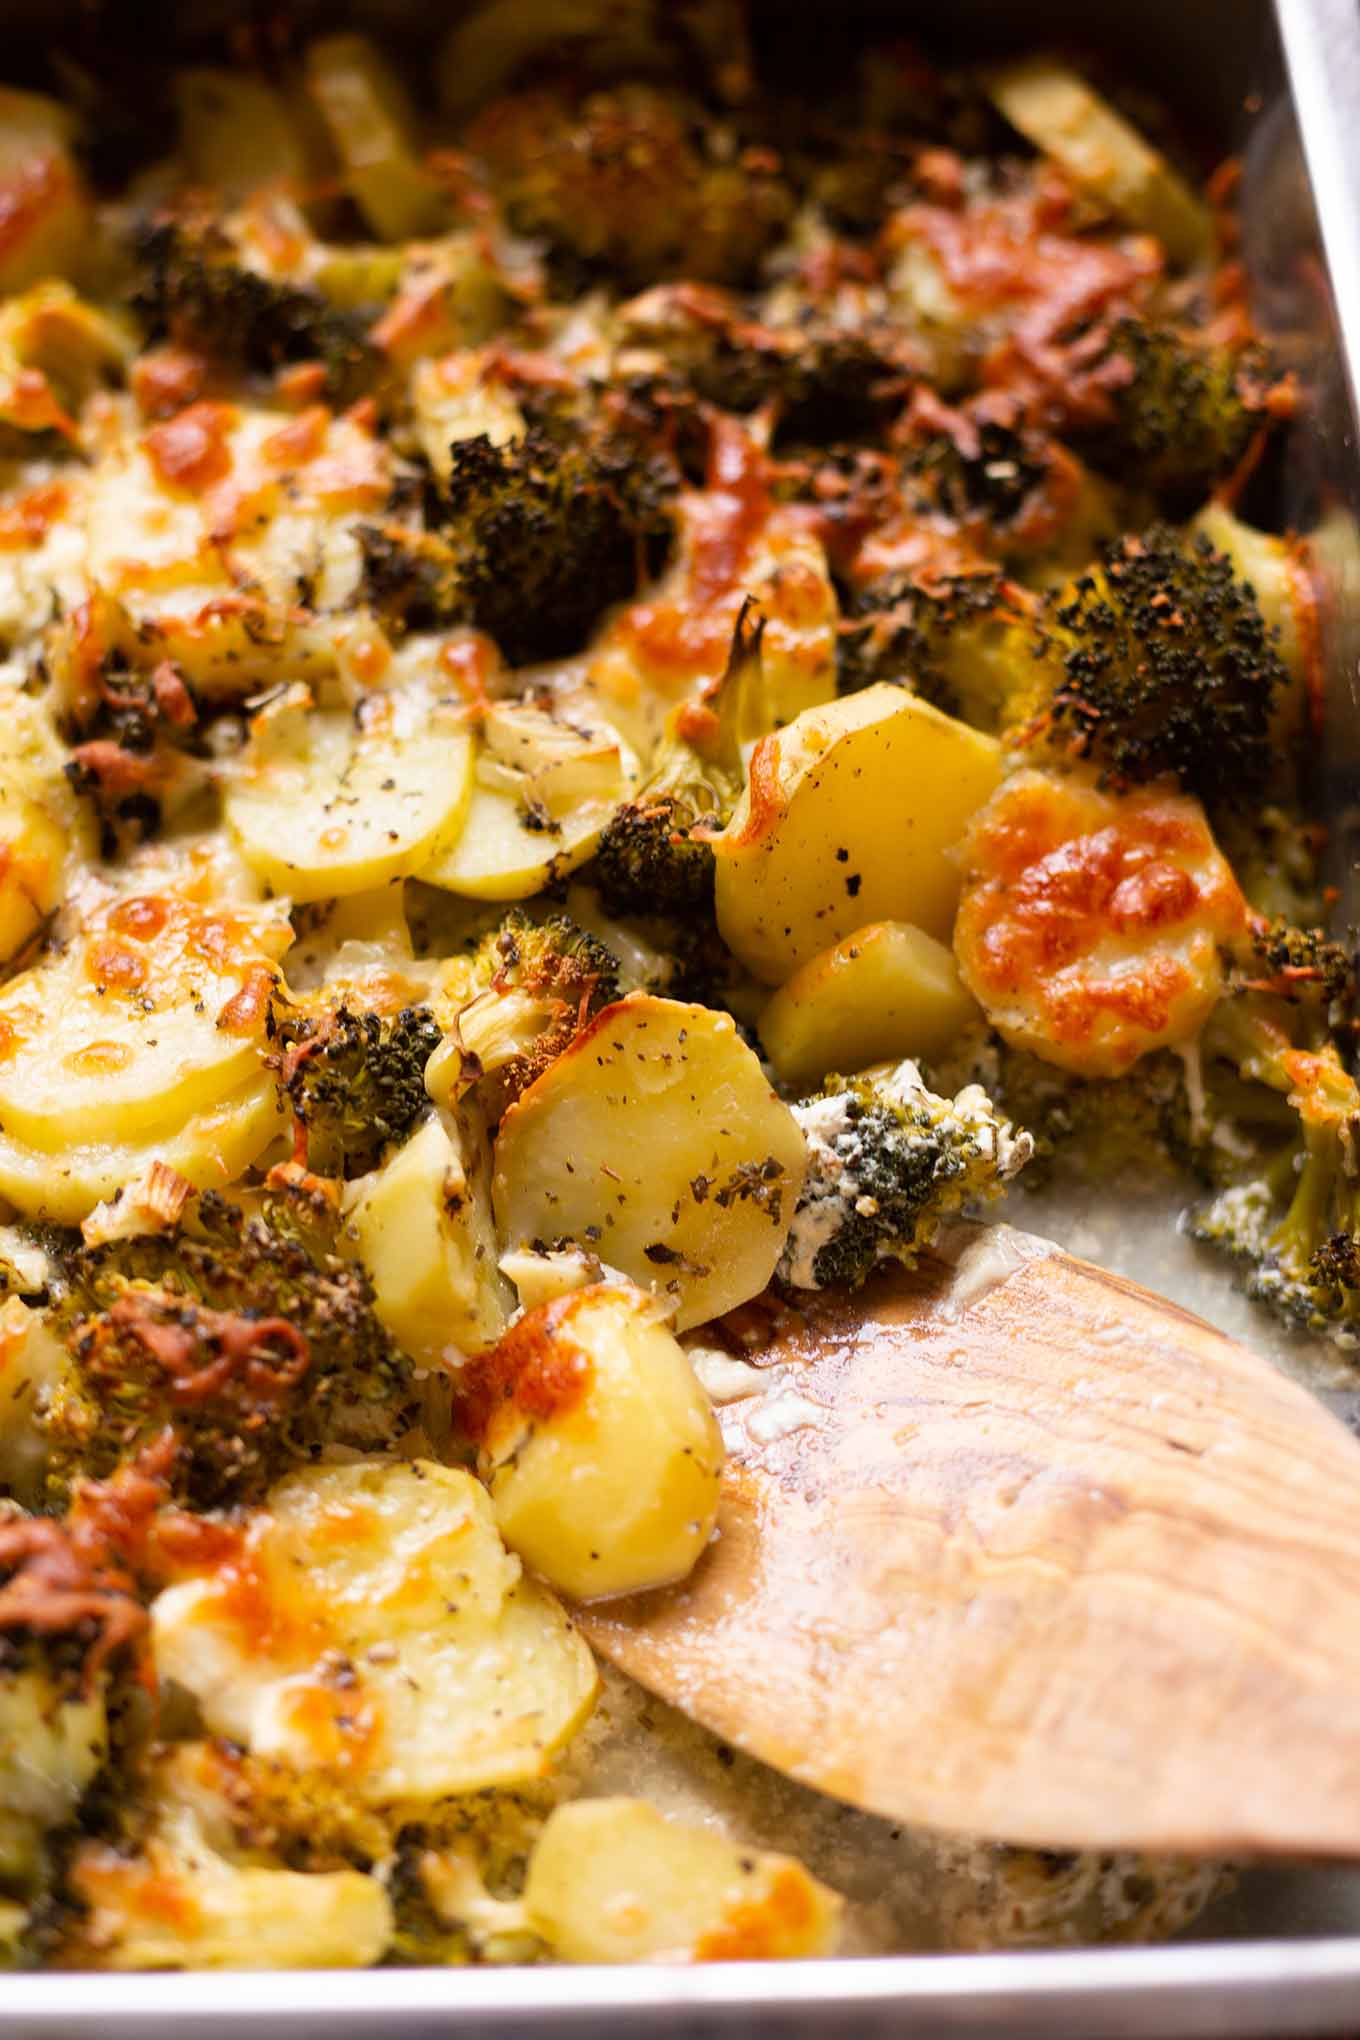 Kartoffel-Brokkoli-Auflauf mit Feta ist ein einfaches 10-Zutaten Rezept aus dem Ofen. Absolutes Soulfood und schnell gemacht! Kochkarussell #kartoffelbrokkoliauflauf #auflauf #mealprep 